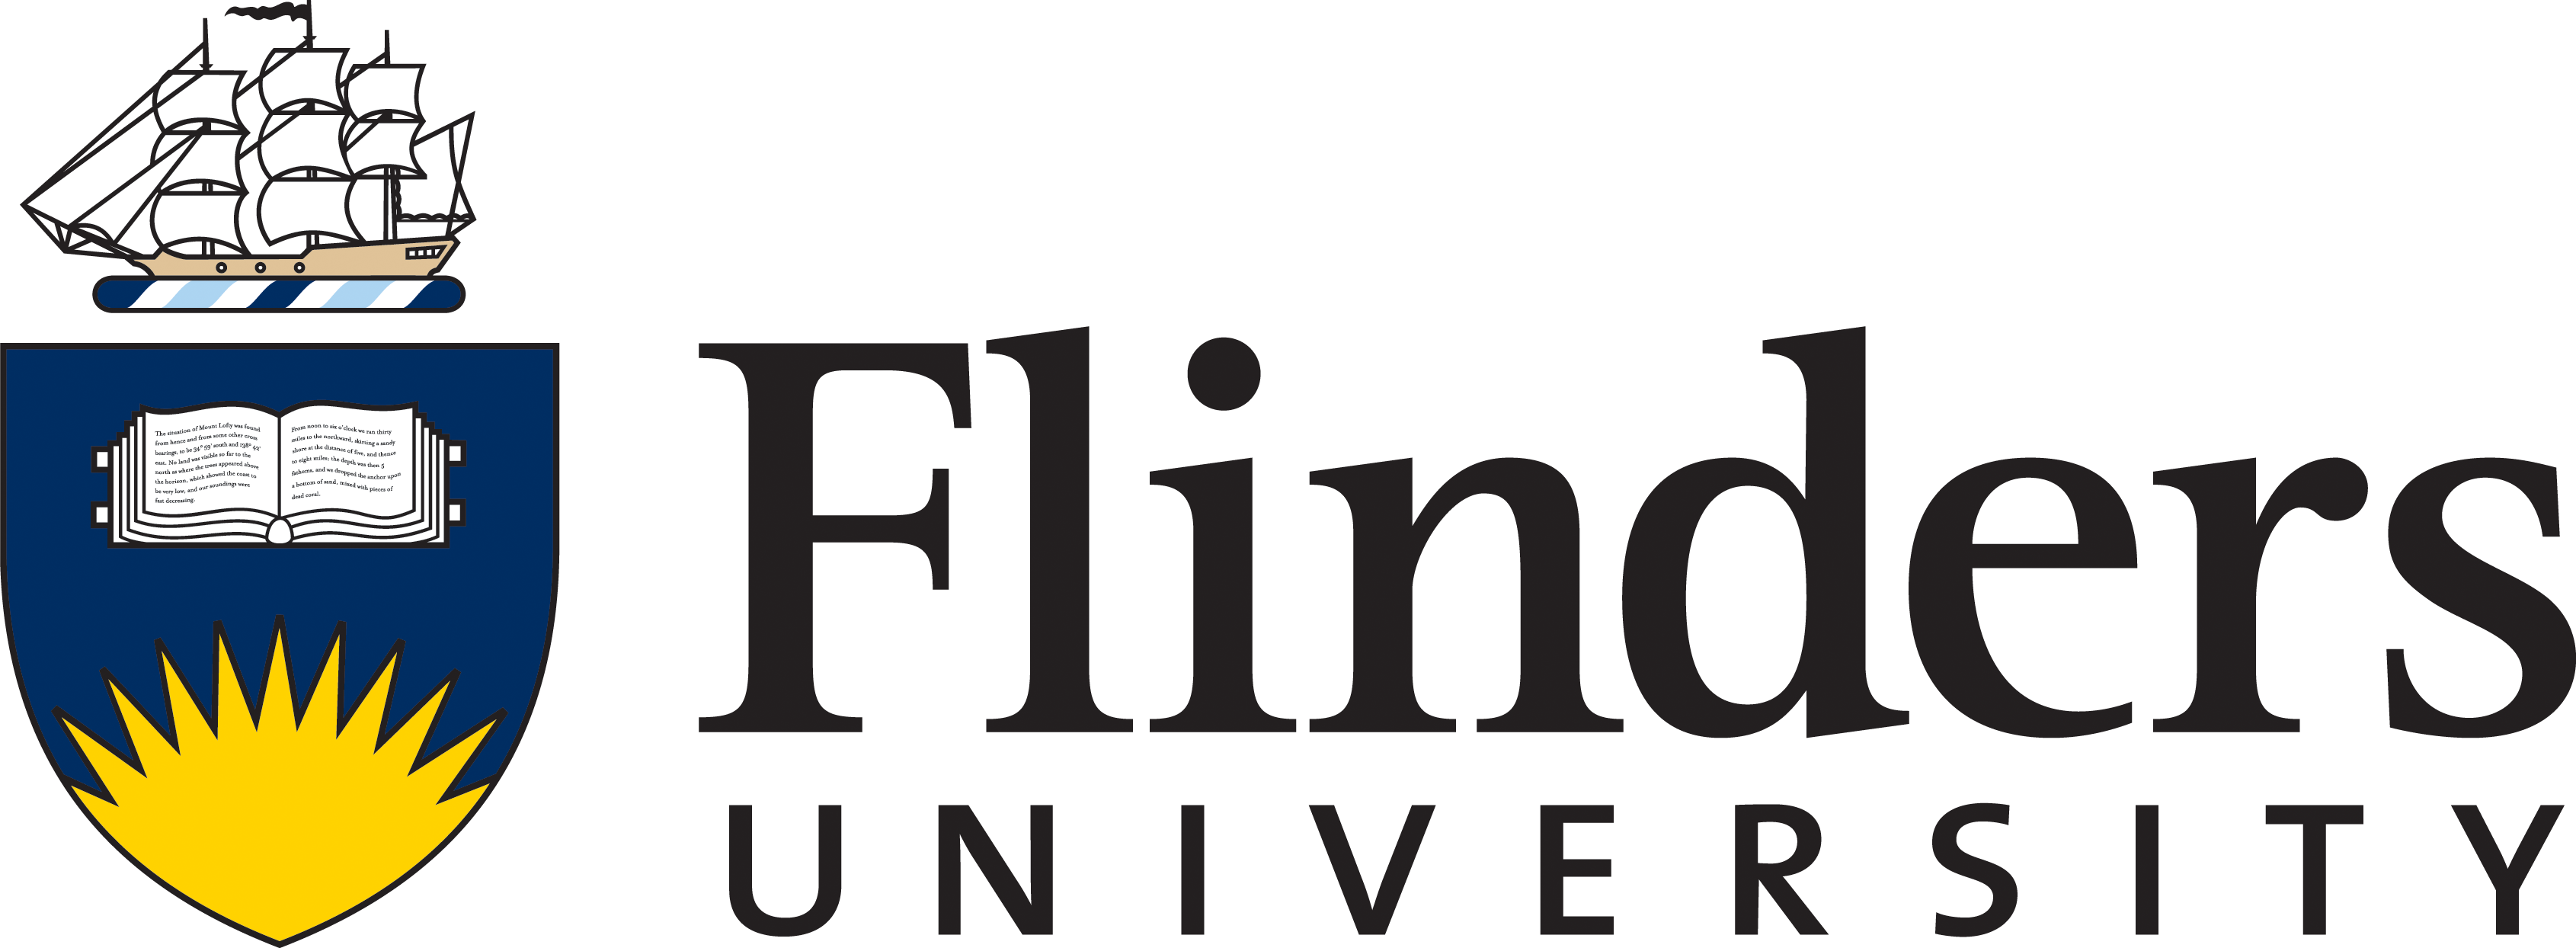 flinders-logo